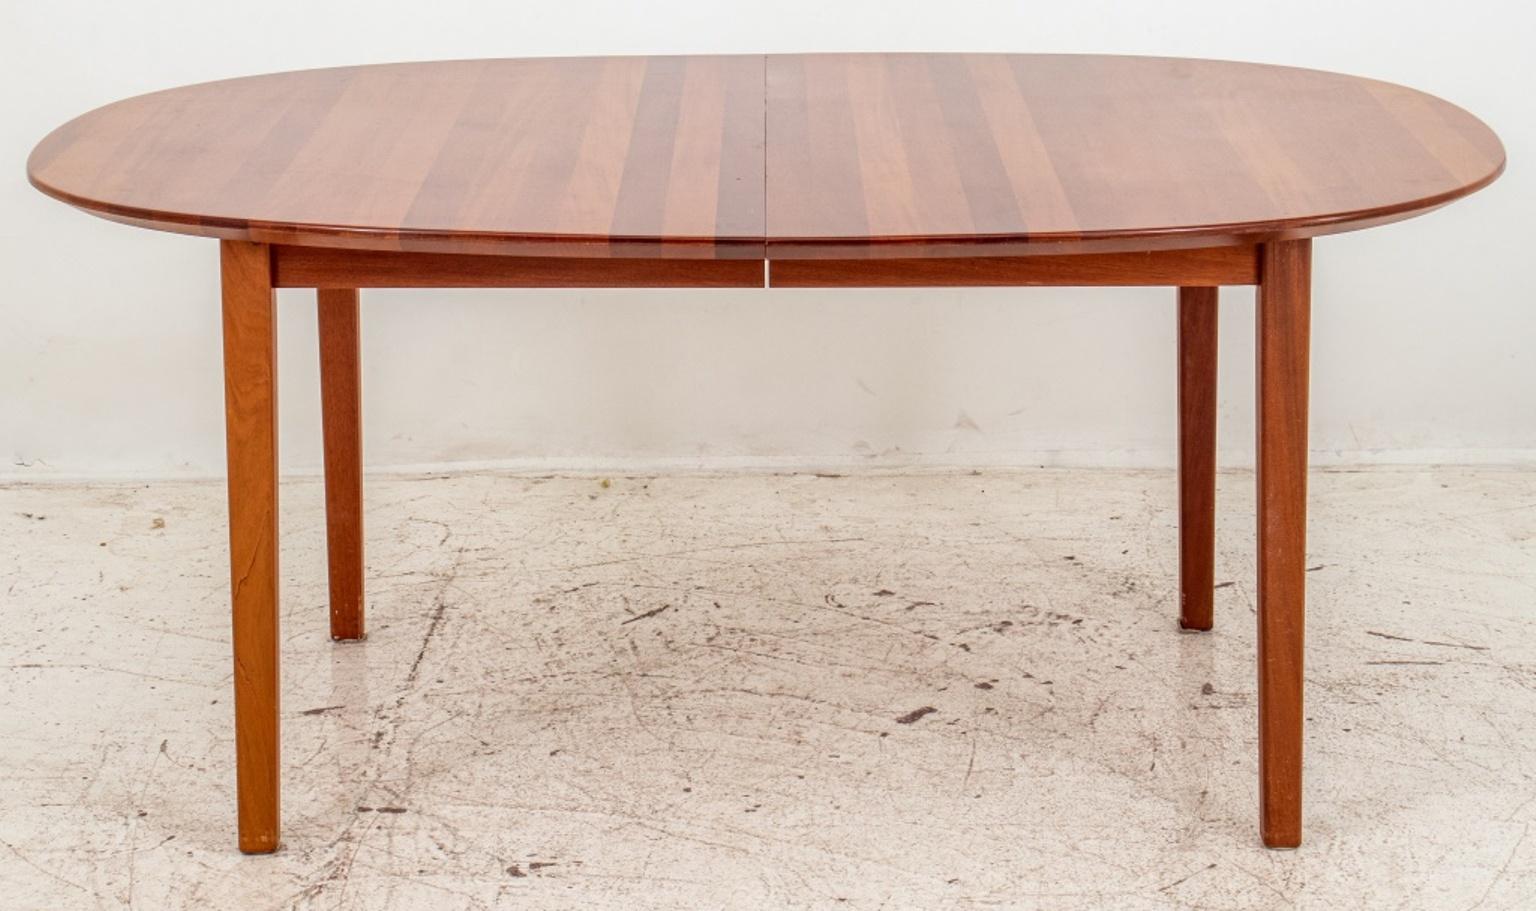 Scandinavian Modern Danish Modern Cherry Wood Extending Table